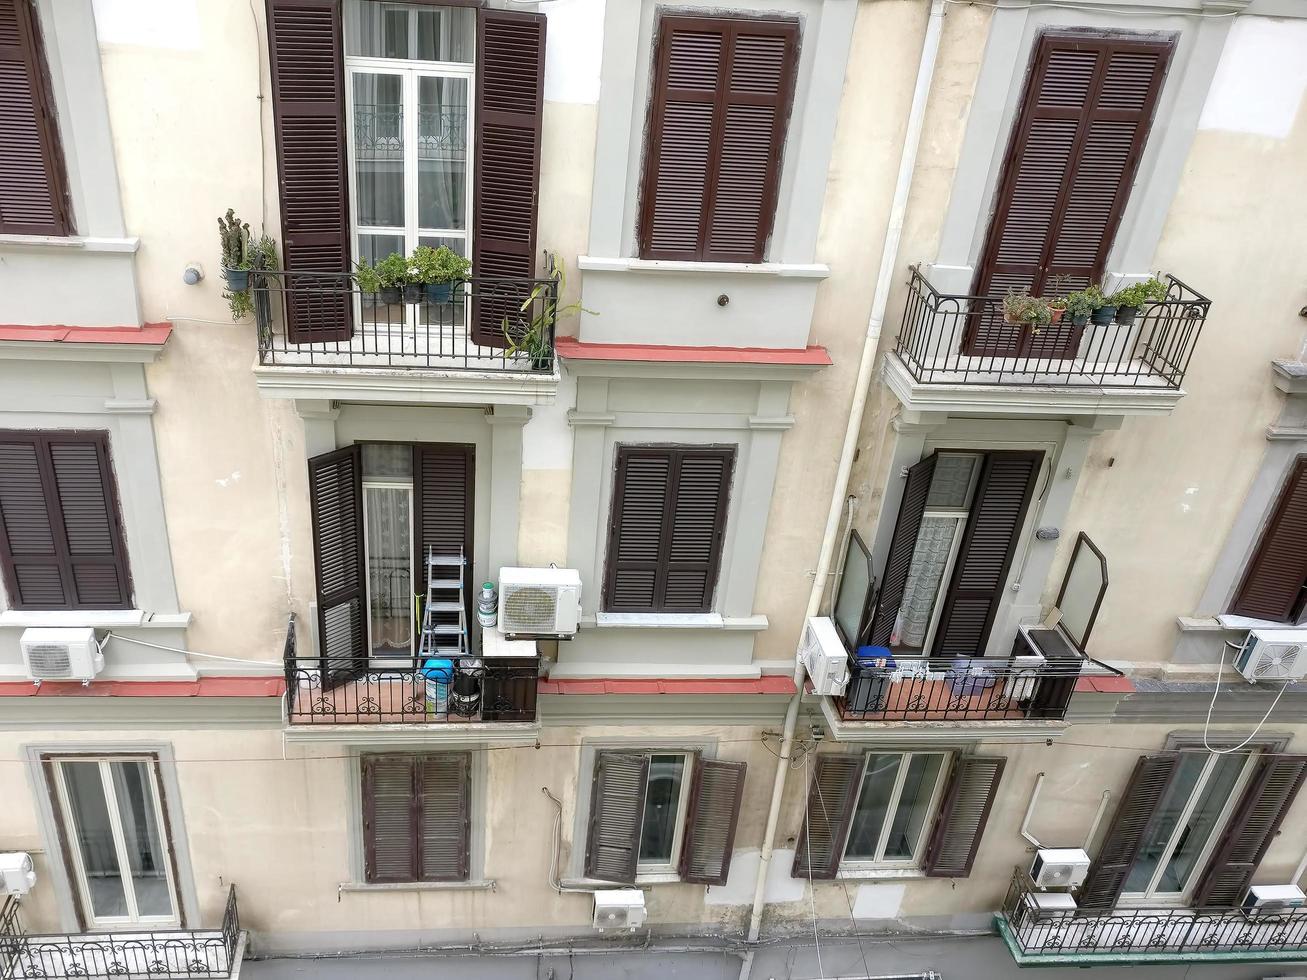 Fenster, Balkone und Fensterläden eines italienischen Mehrfamilienhauses foto